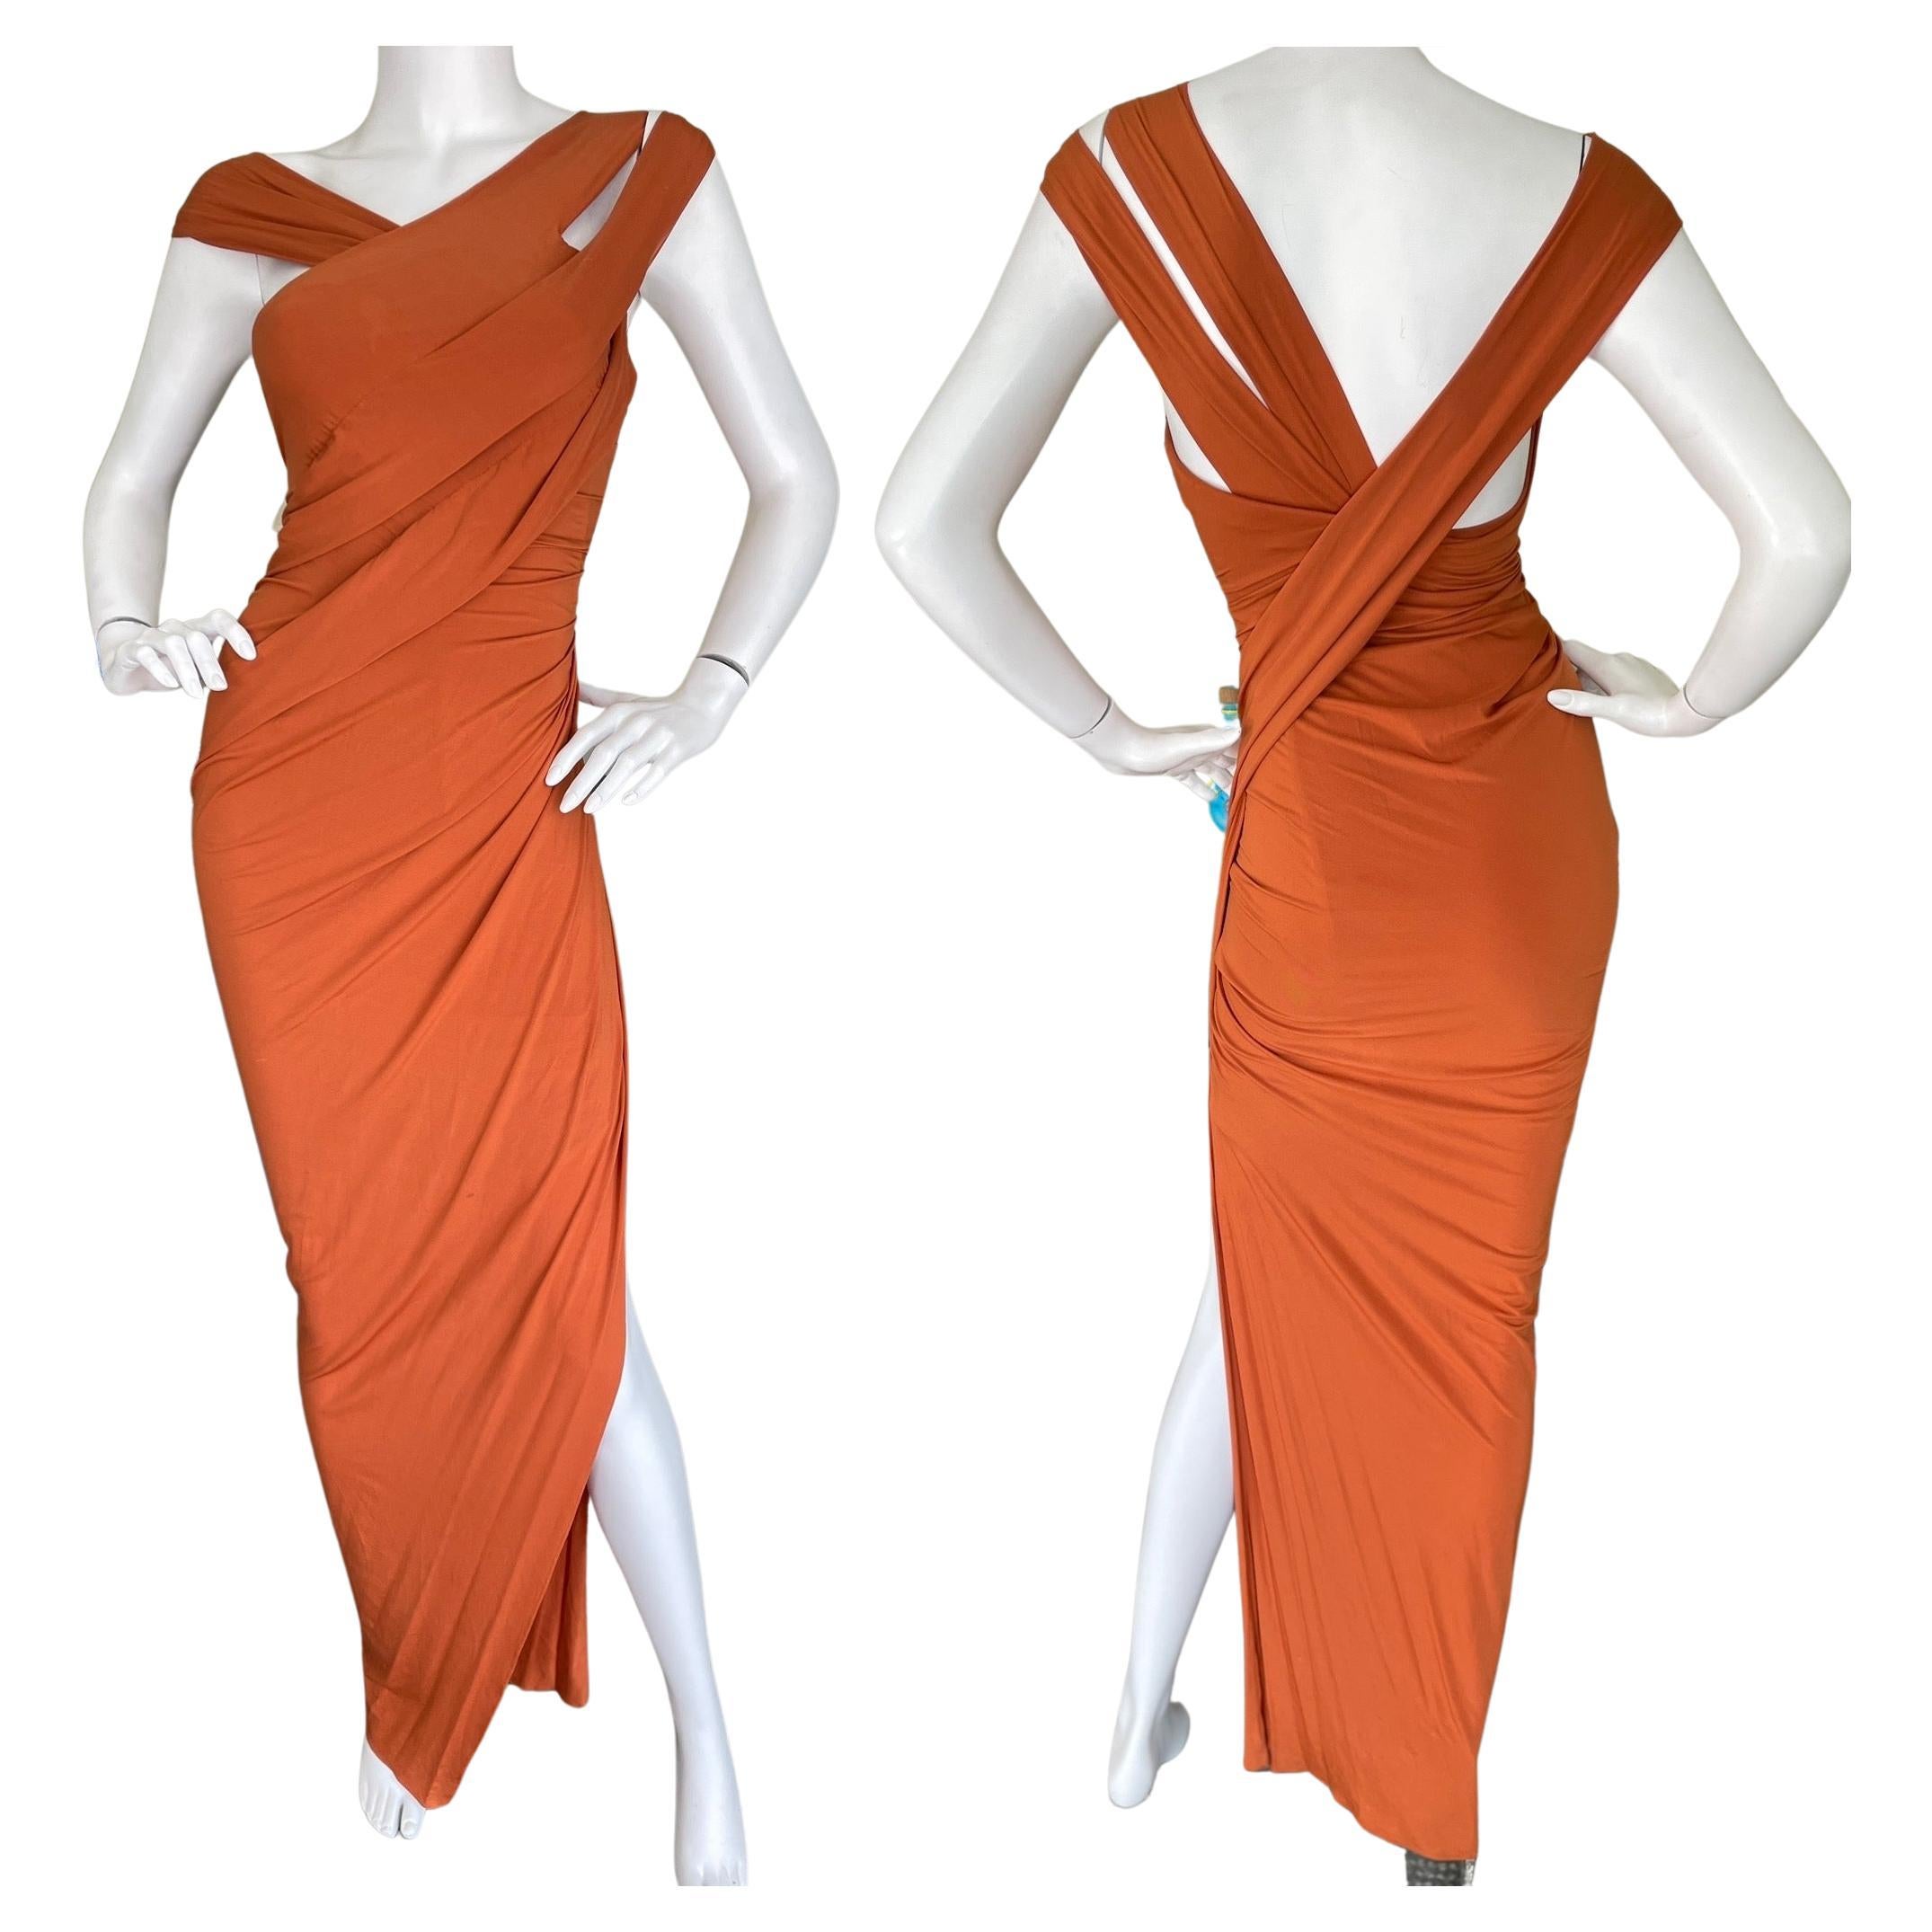 Donna Karan Vintage 1990's Orange Evening Dress with High Side Slit   For Sale